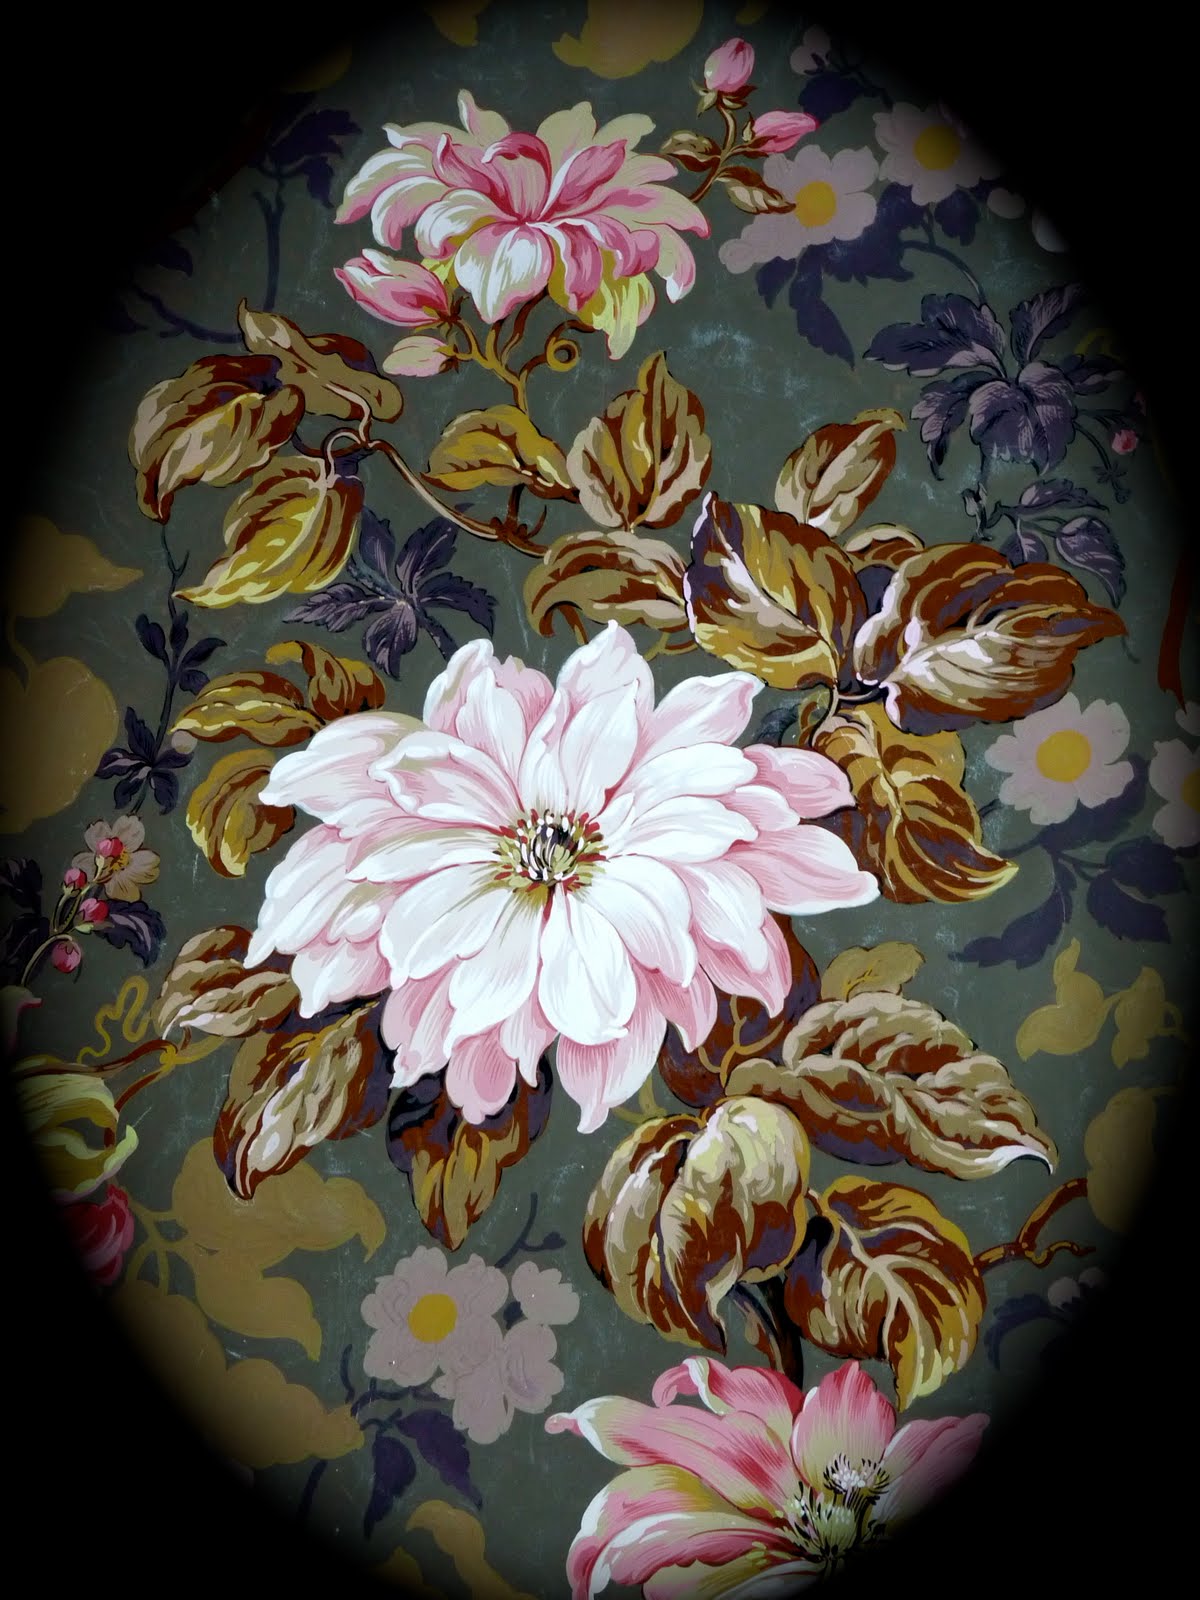 Floral Art Patterns by Designer & Artist Diane Marsland | Art of ...